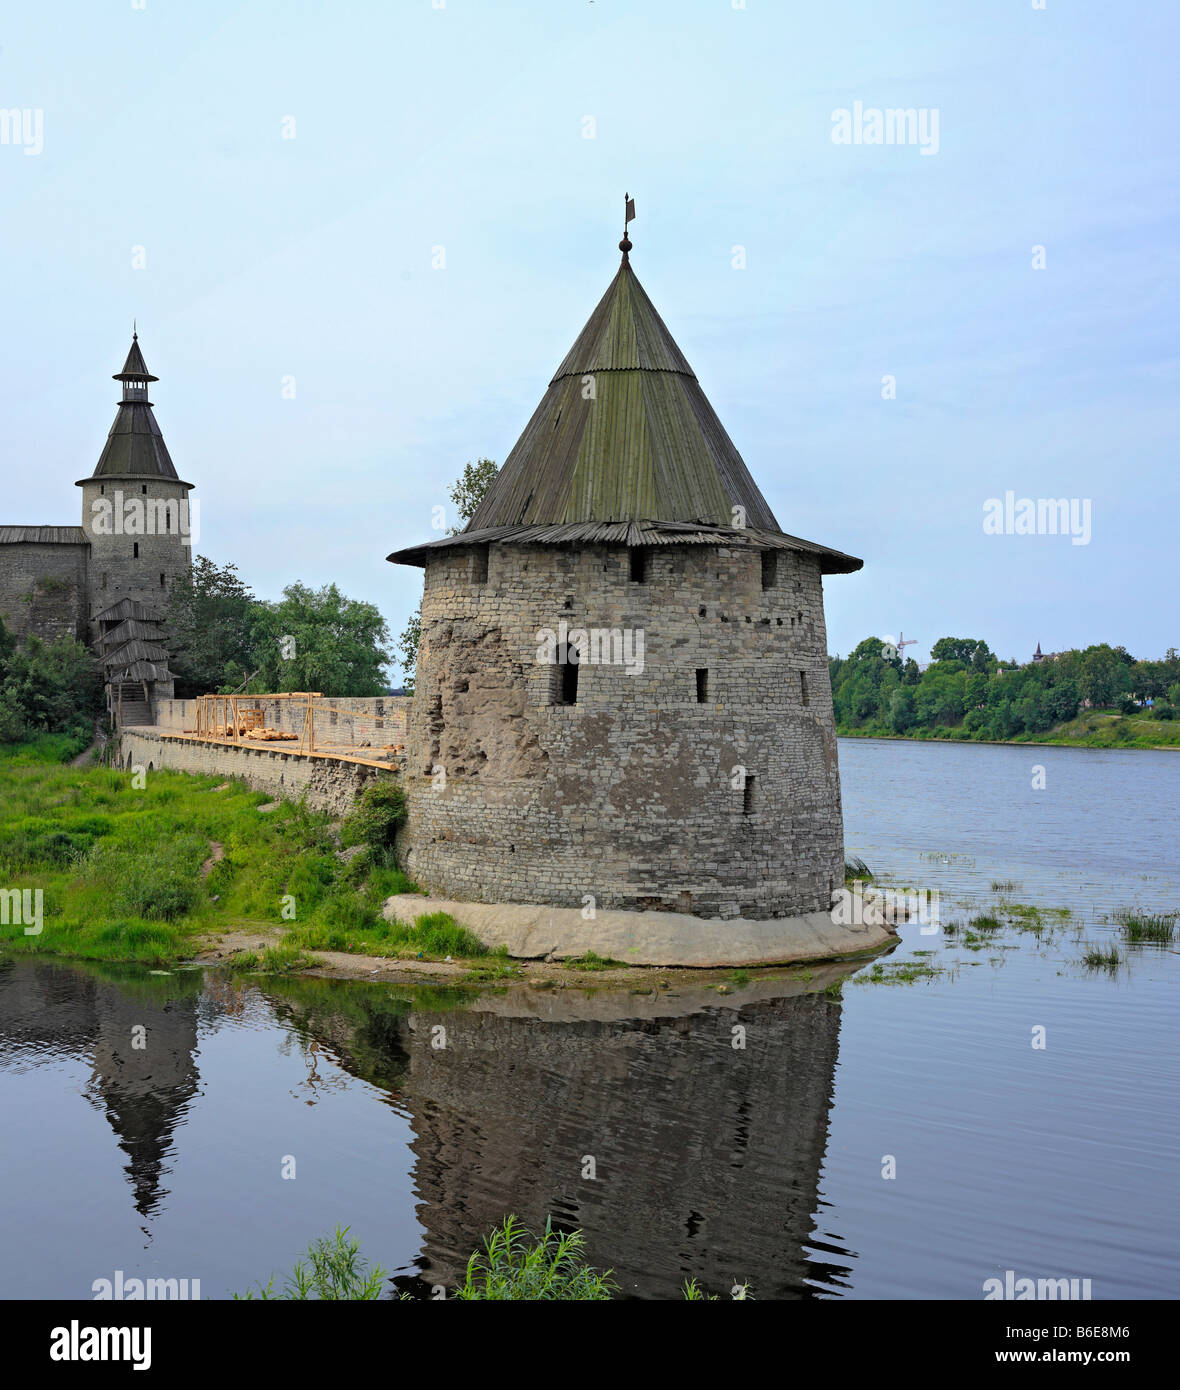 La torre e la parete di Pskov Cremlino fortezza medievale, vista dal fiume Pskova, Pskov Russia Foto Stock